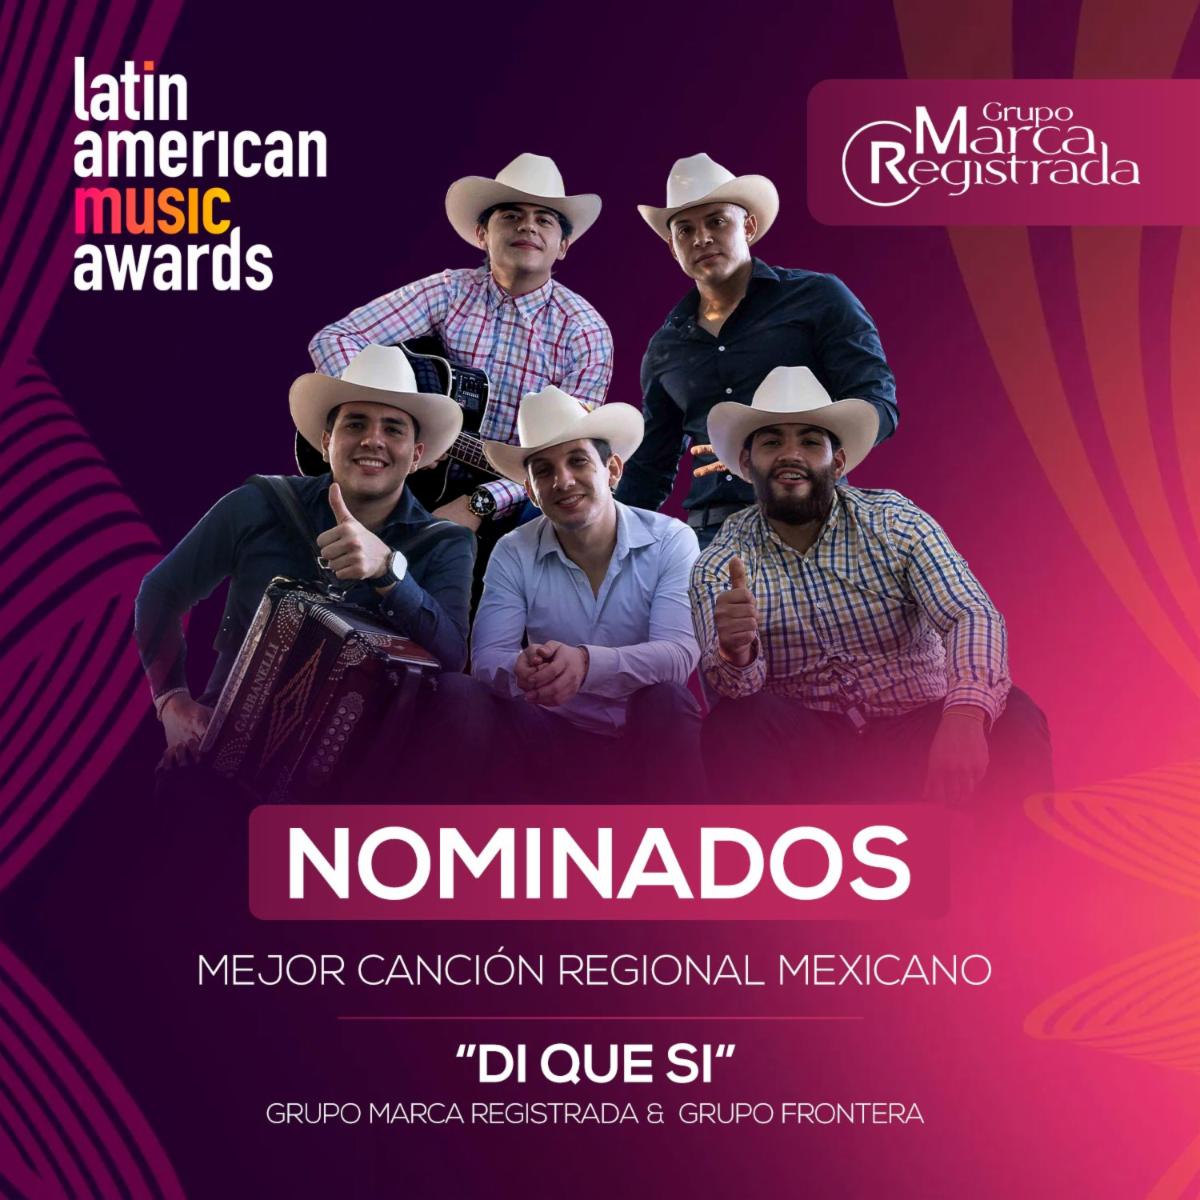 GRUPO MARCA REGISTRADA recibió nominación a los Latin American Music Awards